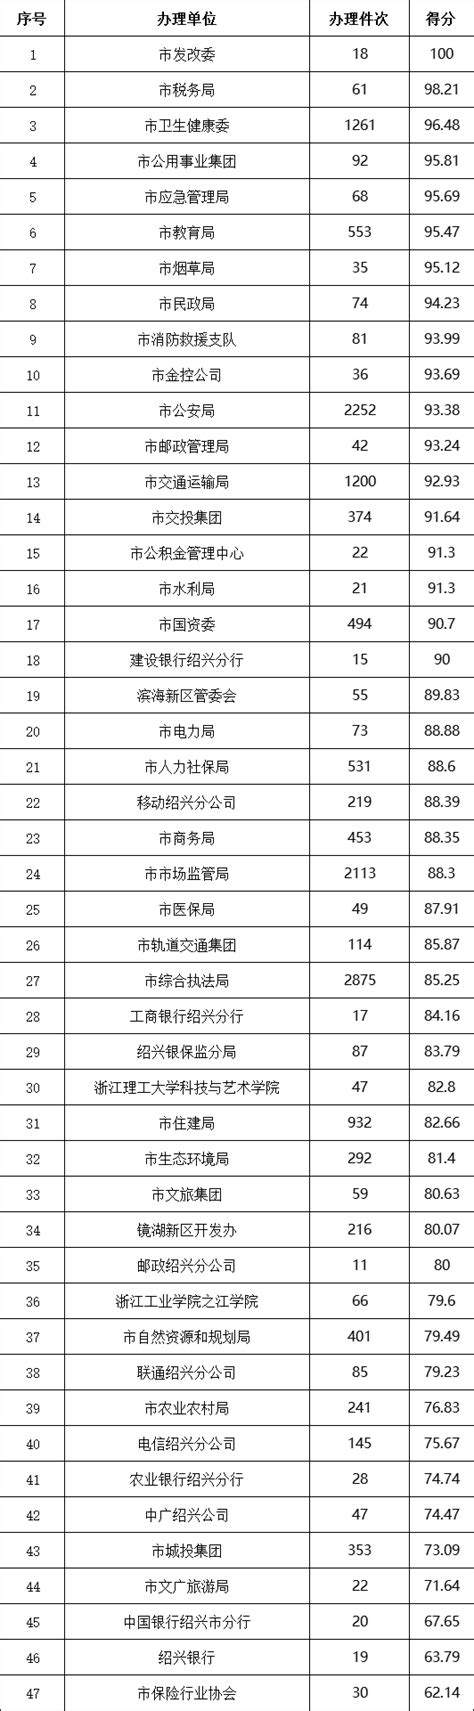 2023年上海职业学院排名名单公布 第一名院校专业简直太厉害了